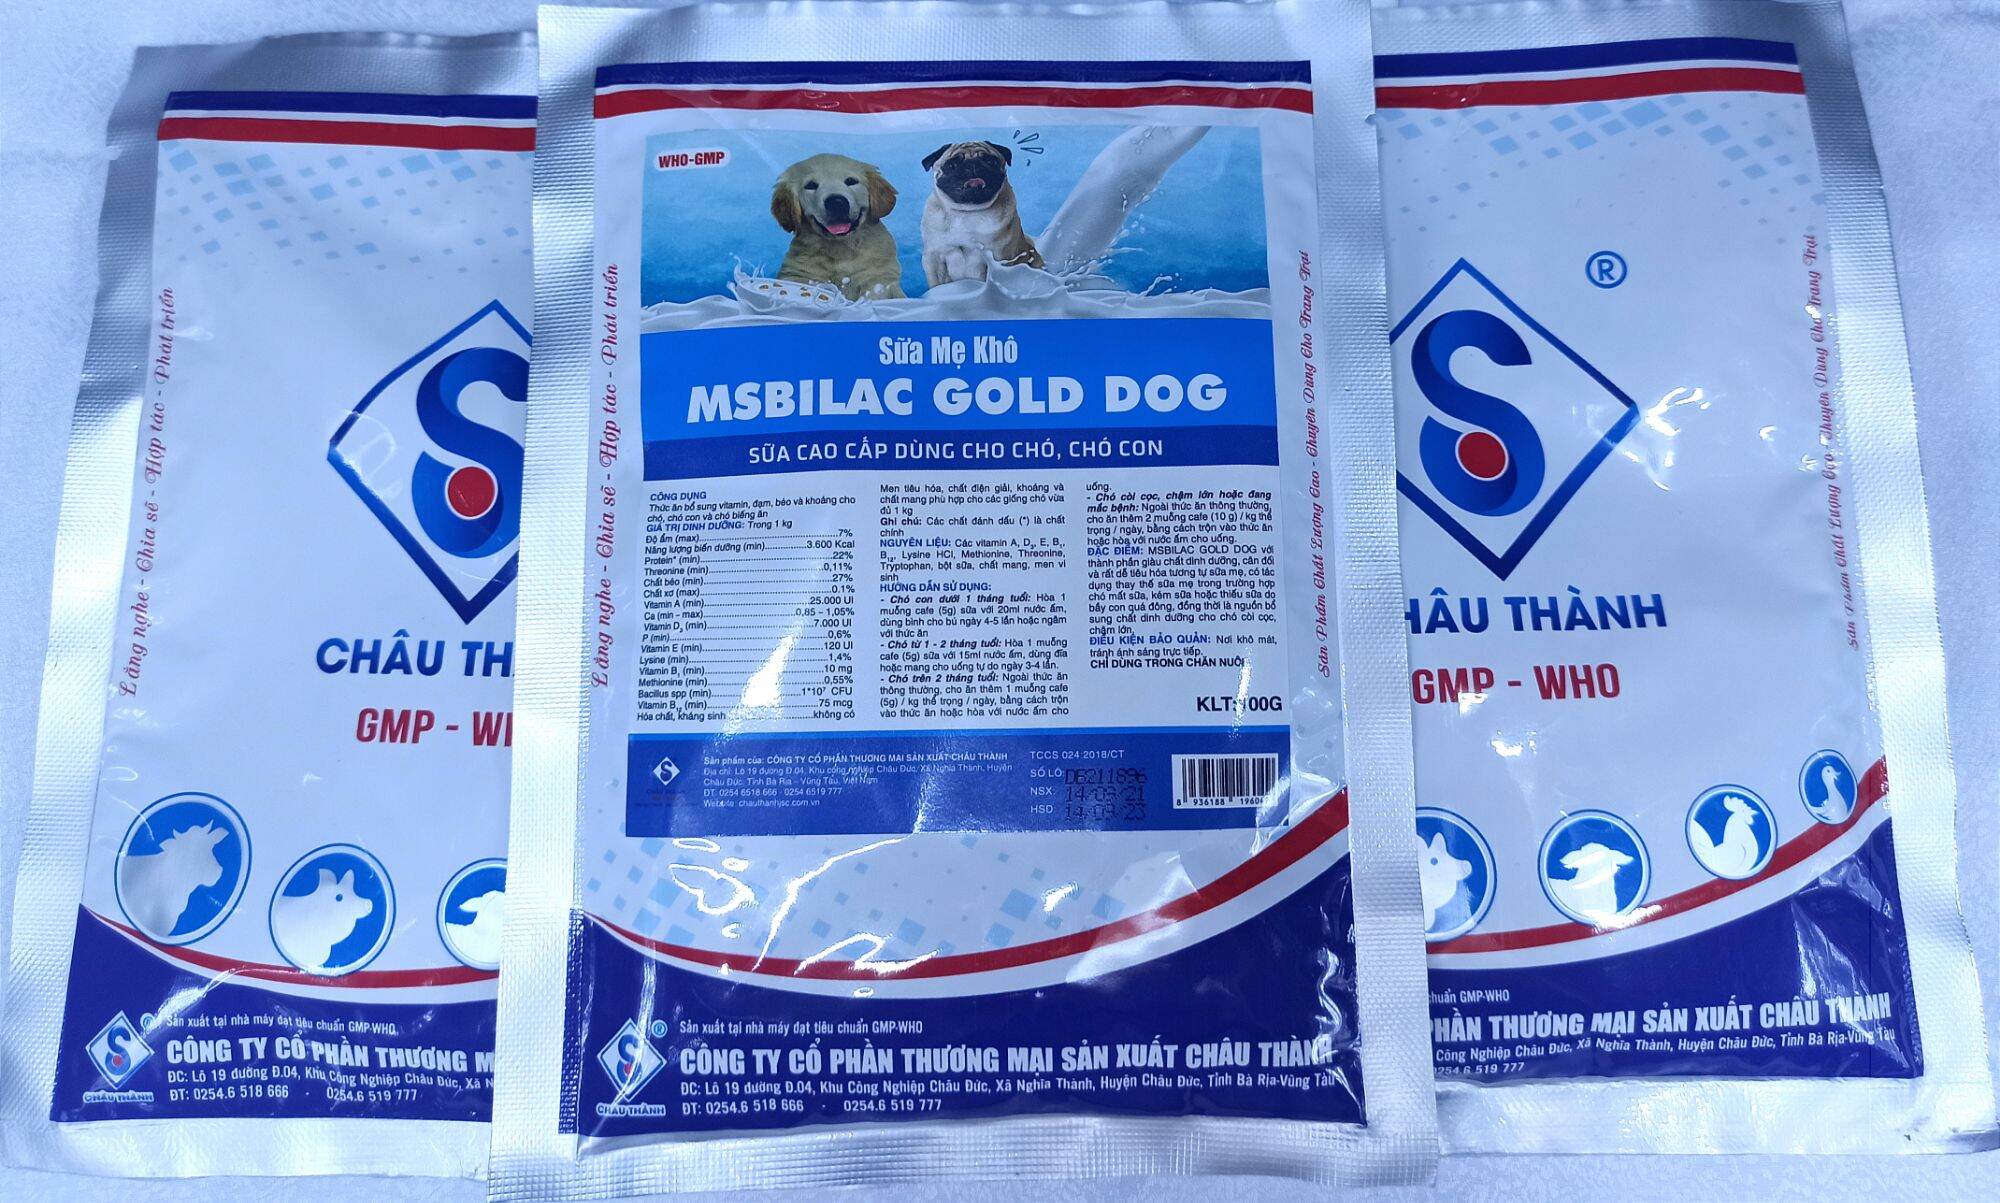 MSBILAC GOLD DOG- sữa mẹ khô dành cho chó gói 100G